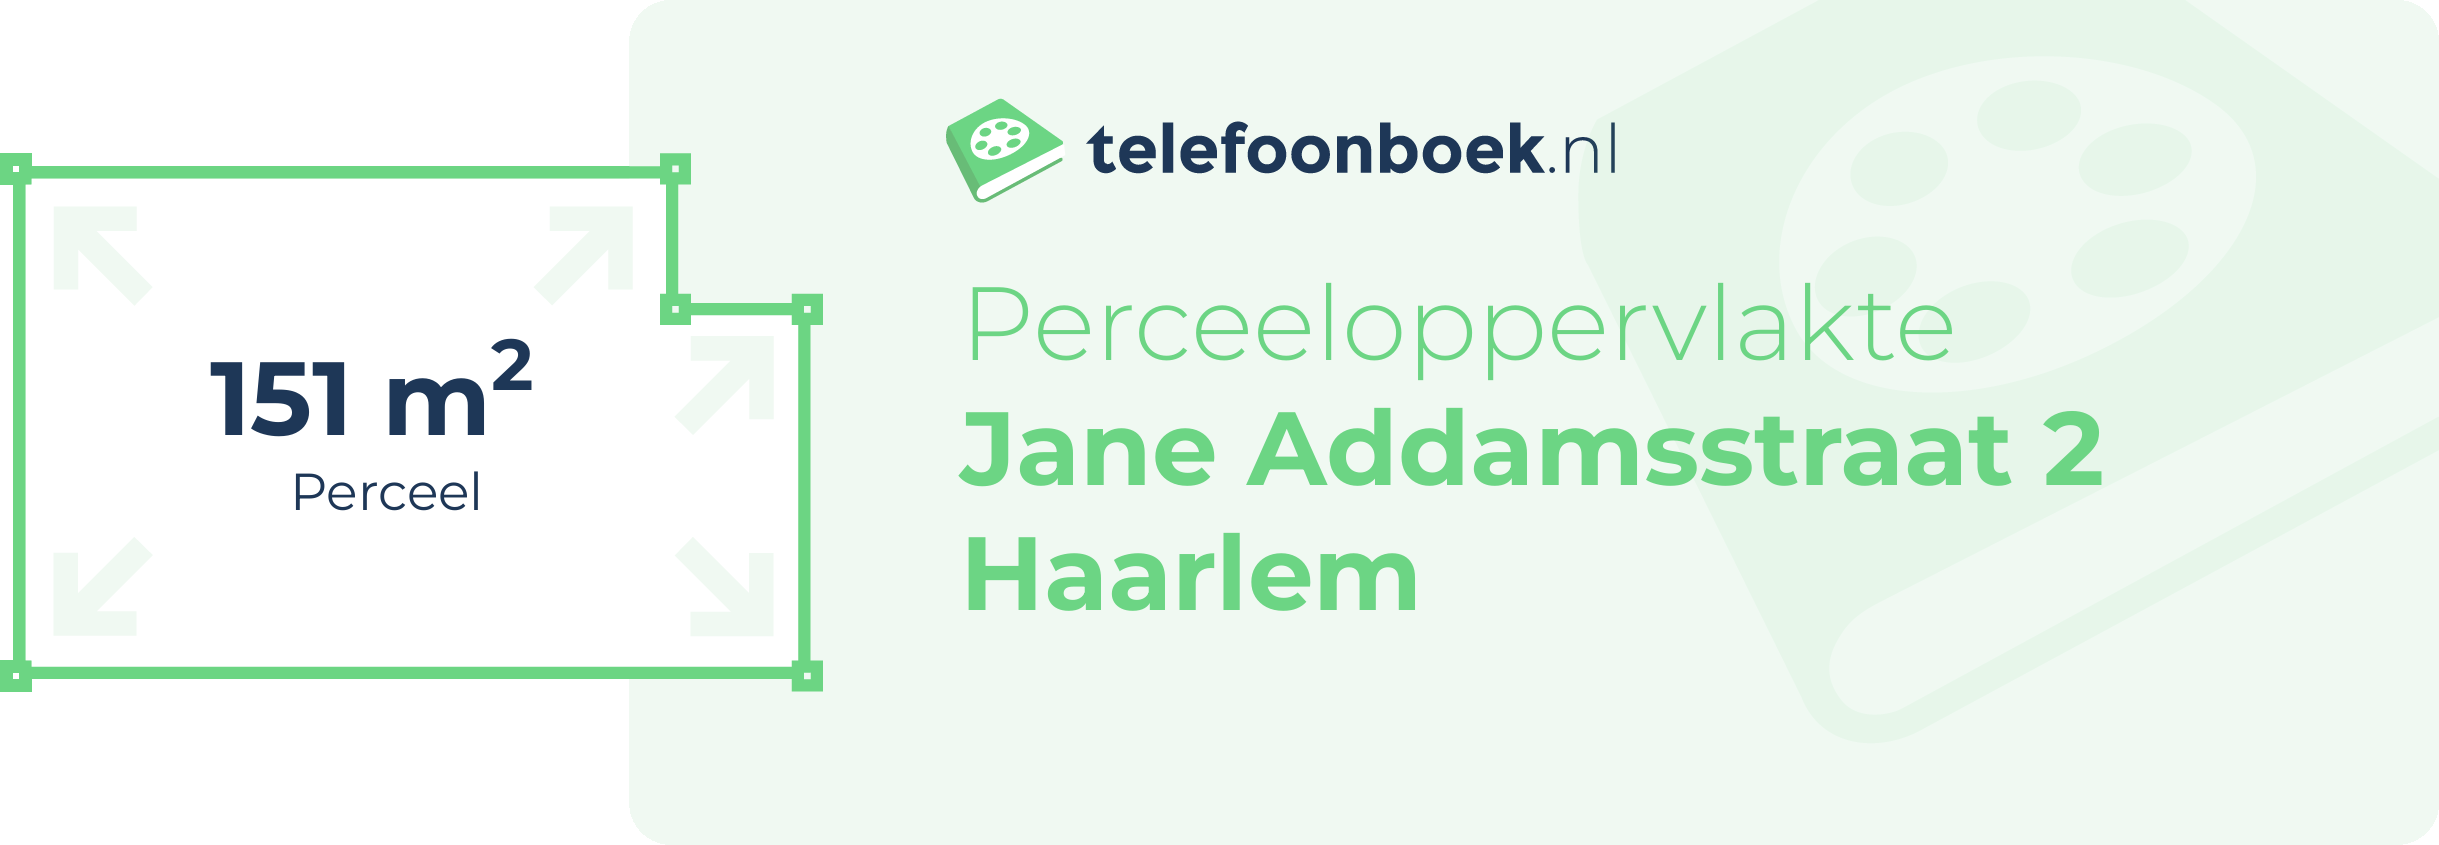 Perceeloppervlakte Jane Addamsstraat 2 Haarlem